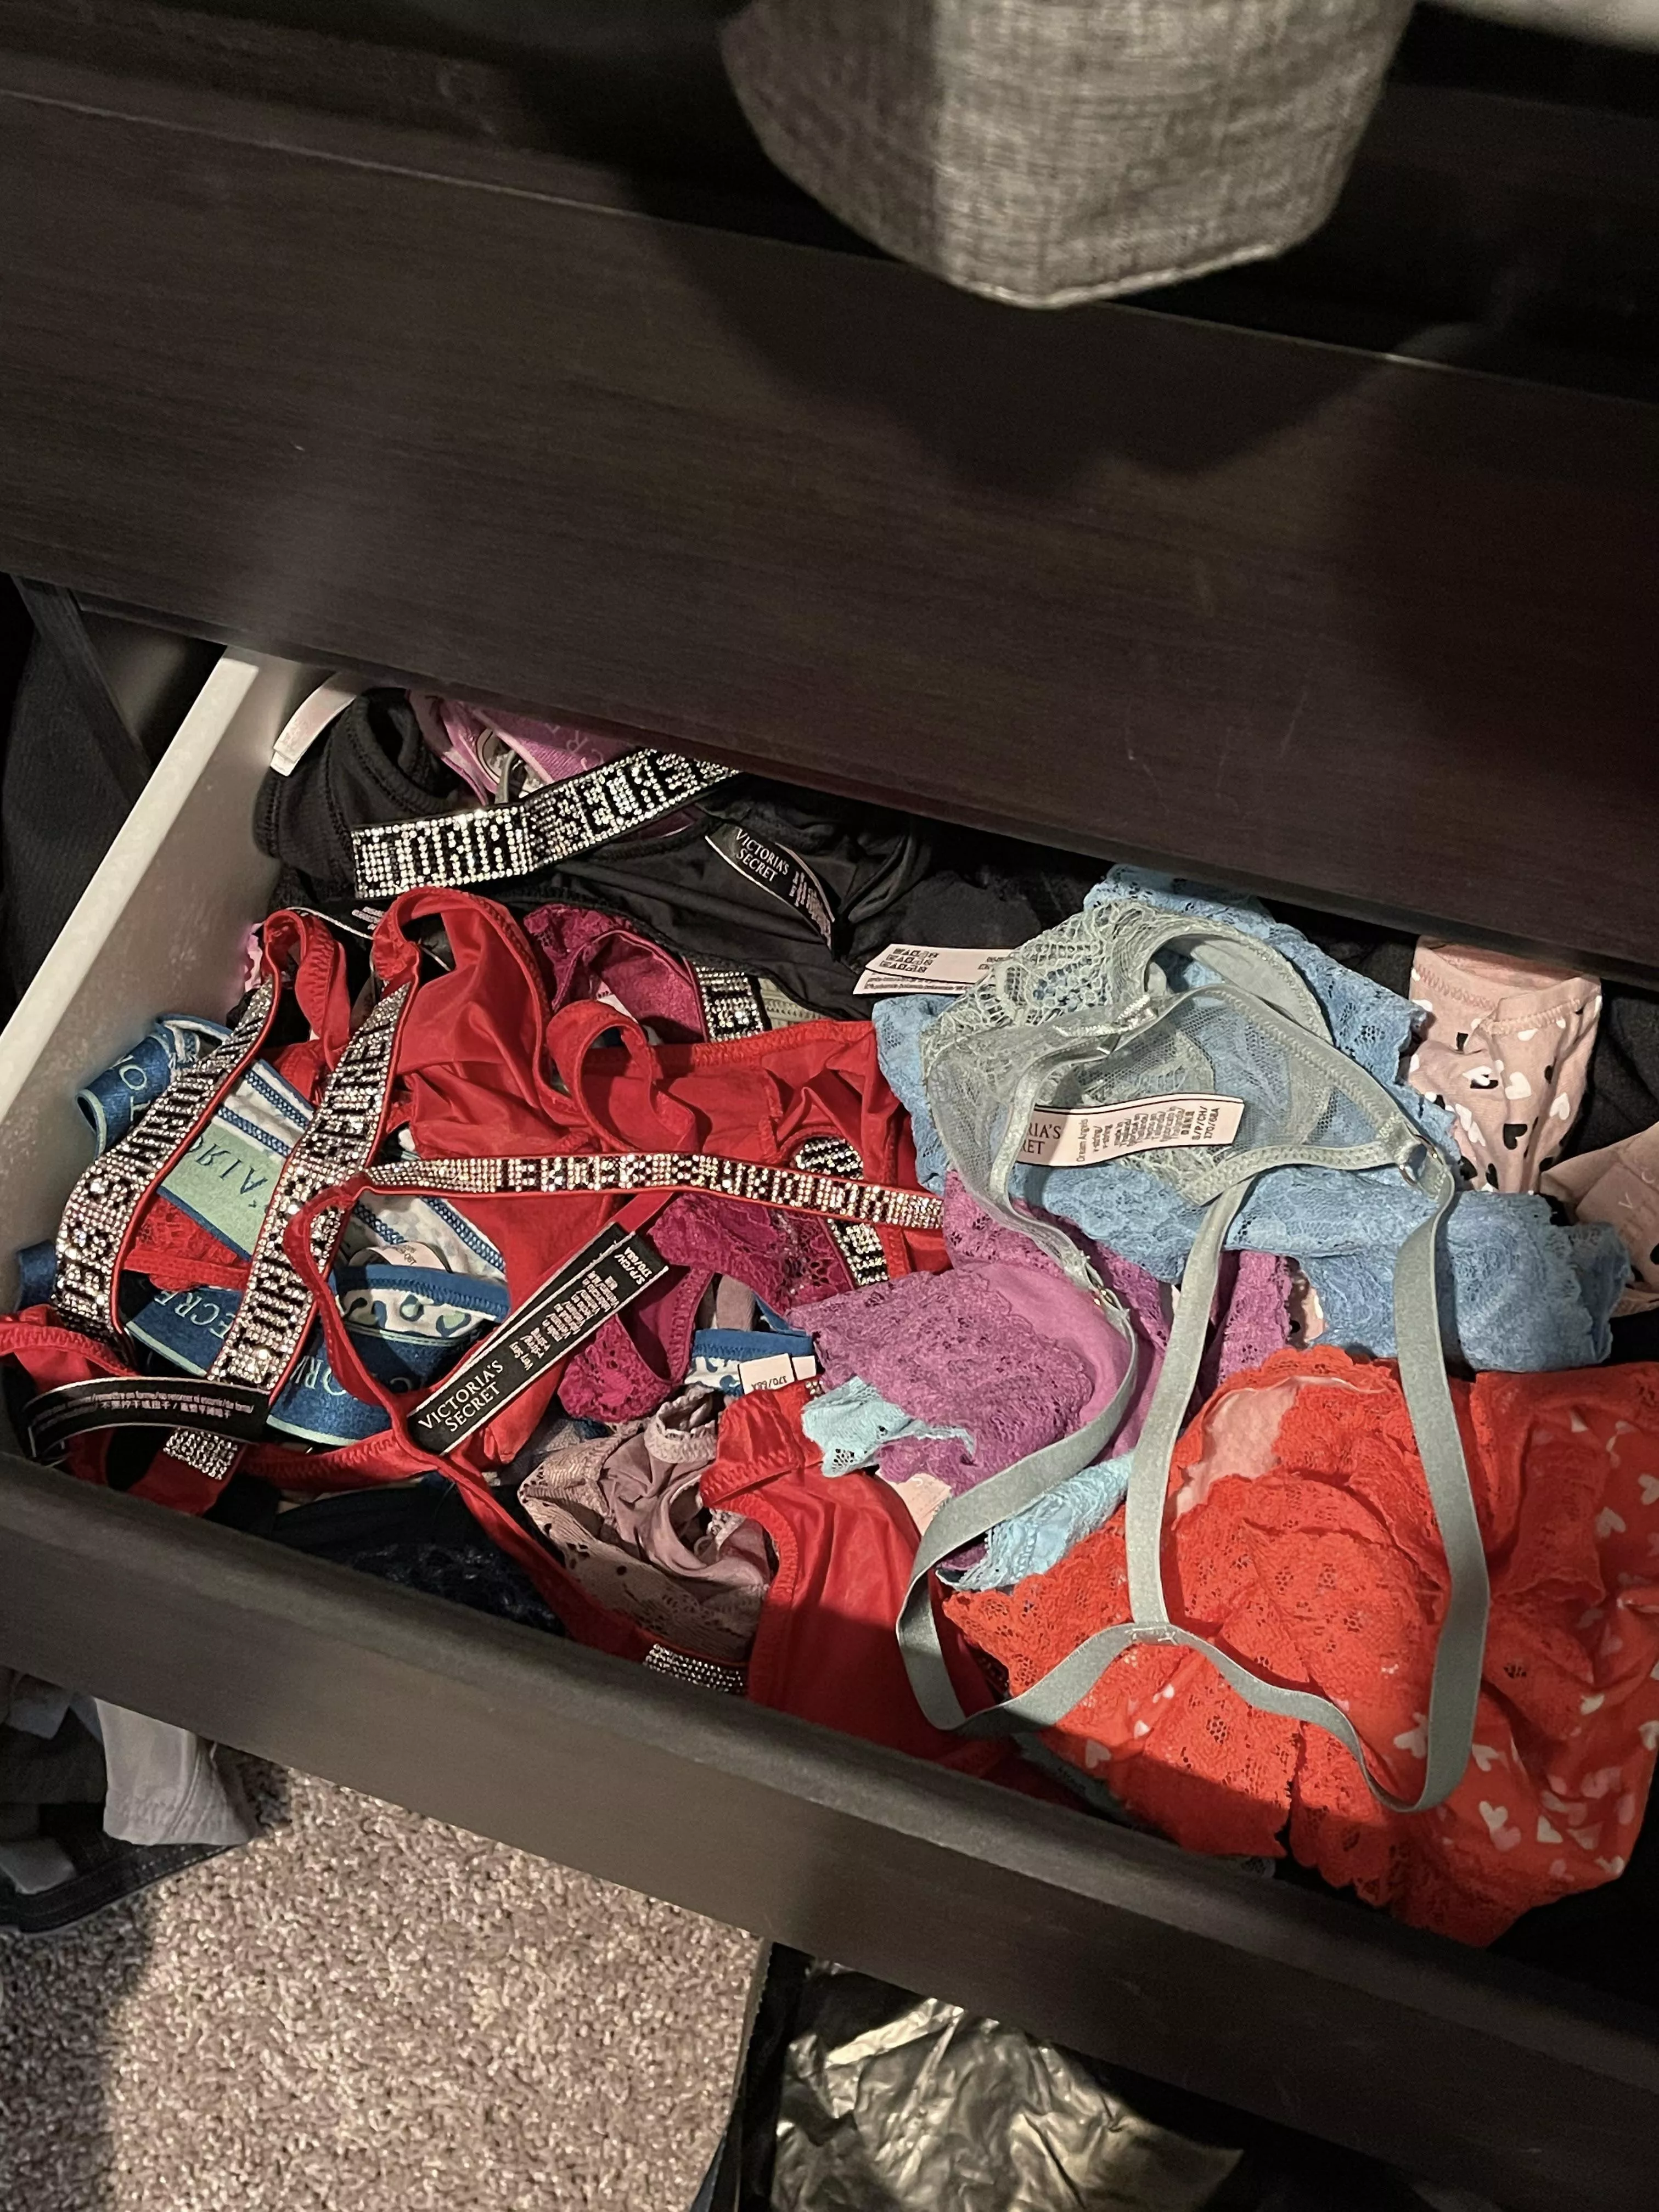 Cumming in panty drawer pic